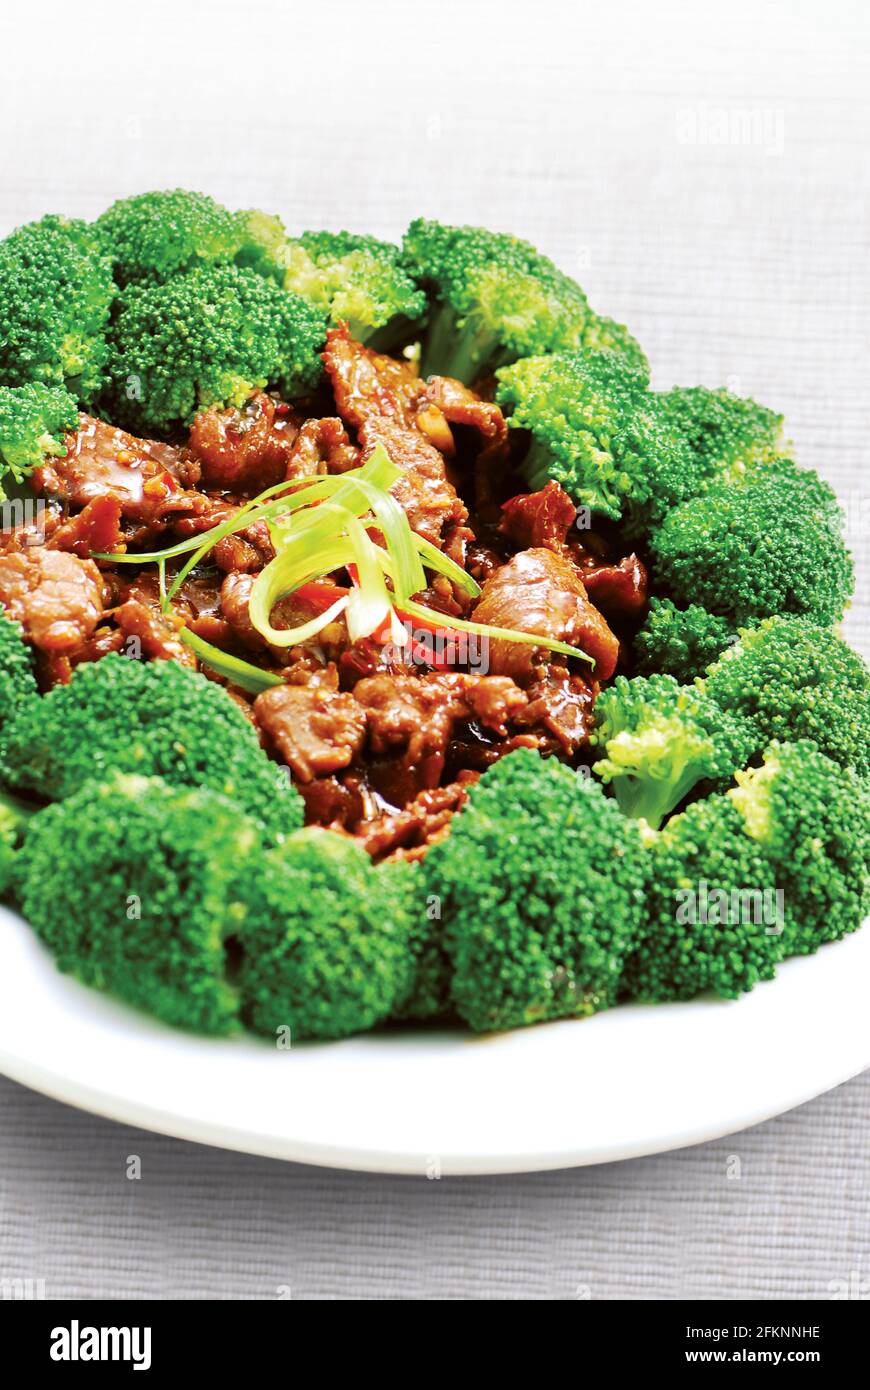 Stir fried meat with broccoli Stock Photo